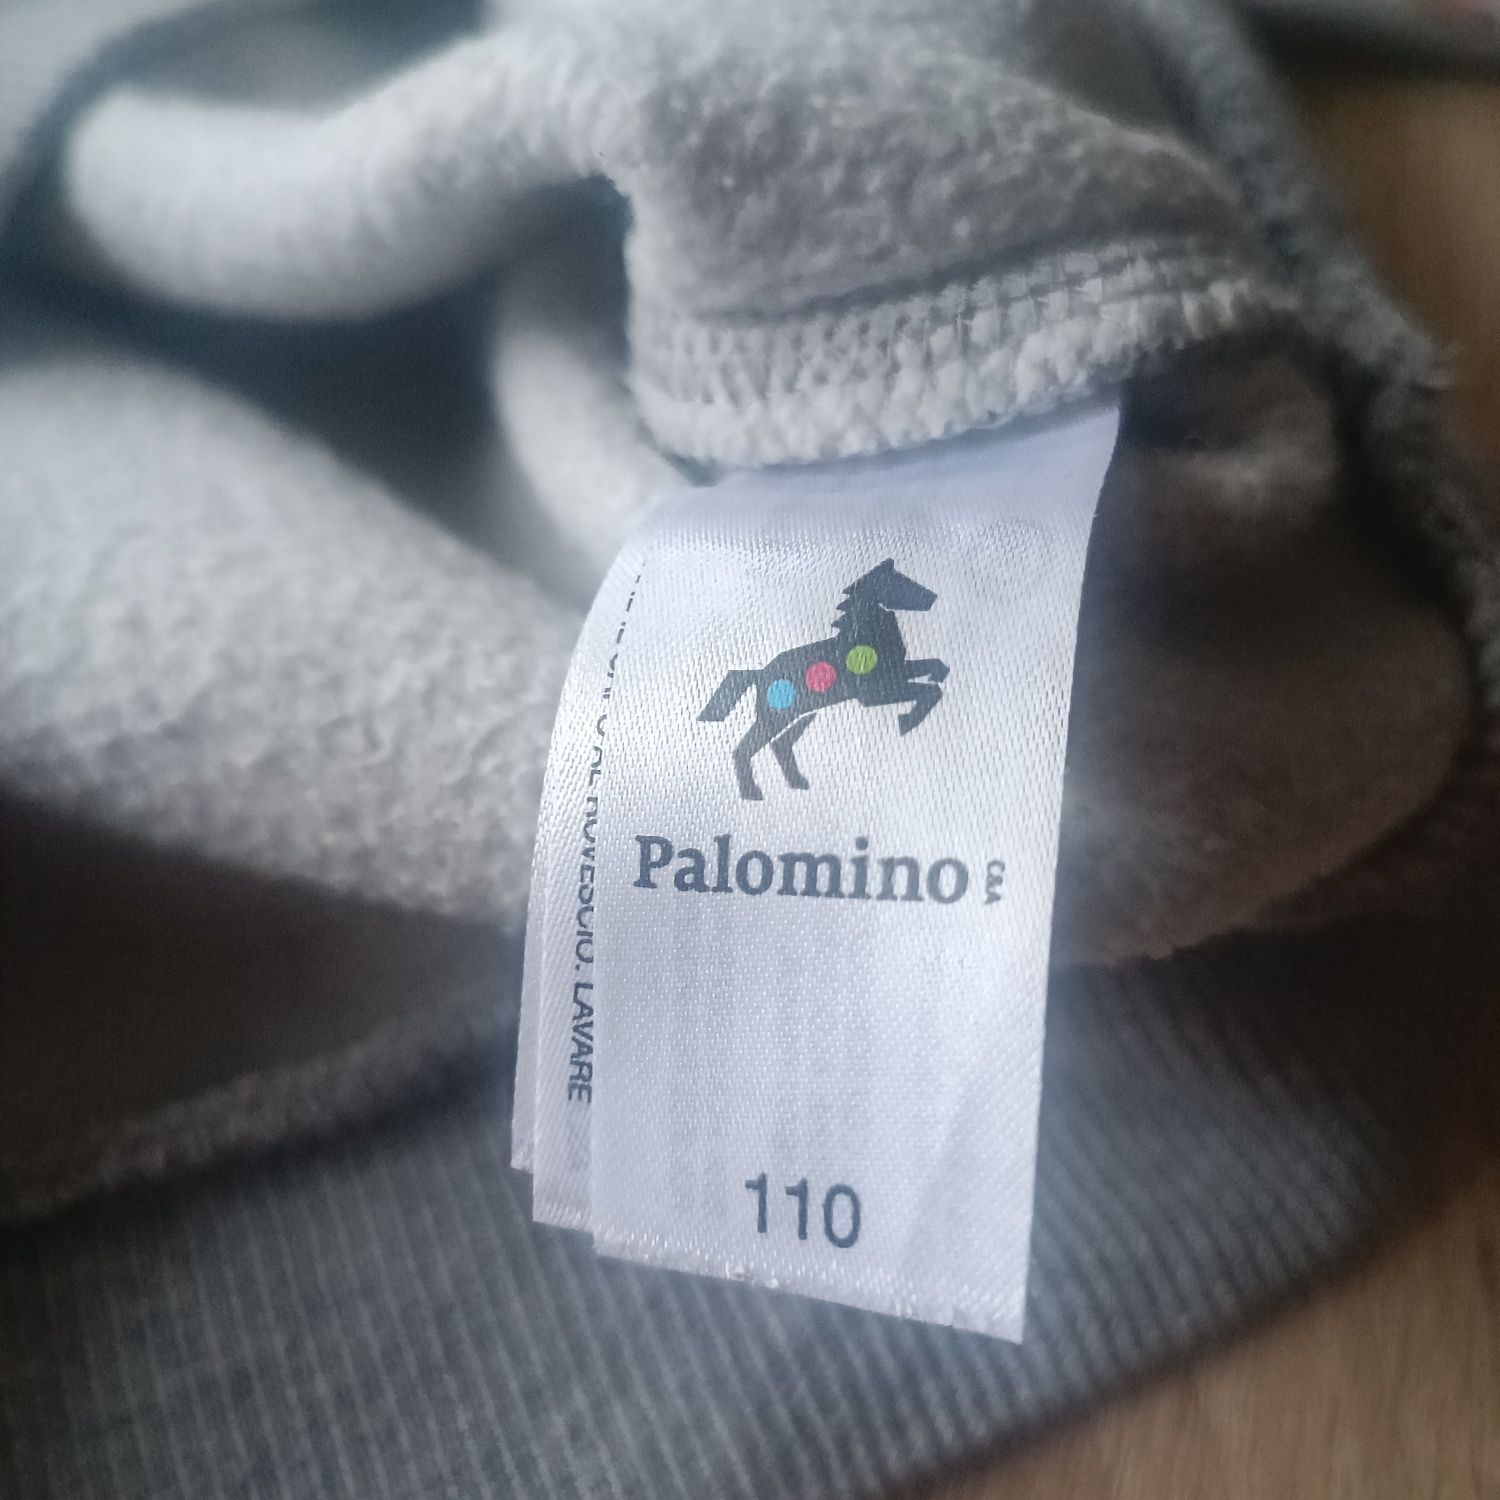 Bluza chłopięca szara 110 c&a Palomino camping